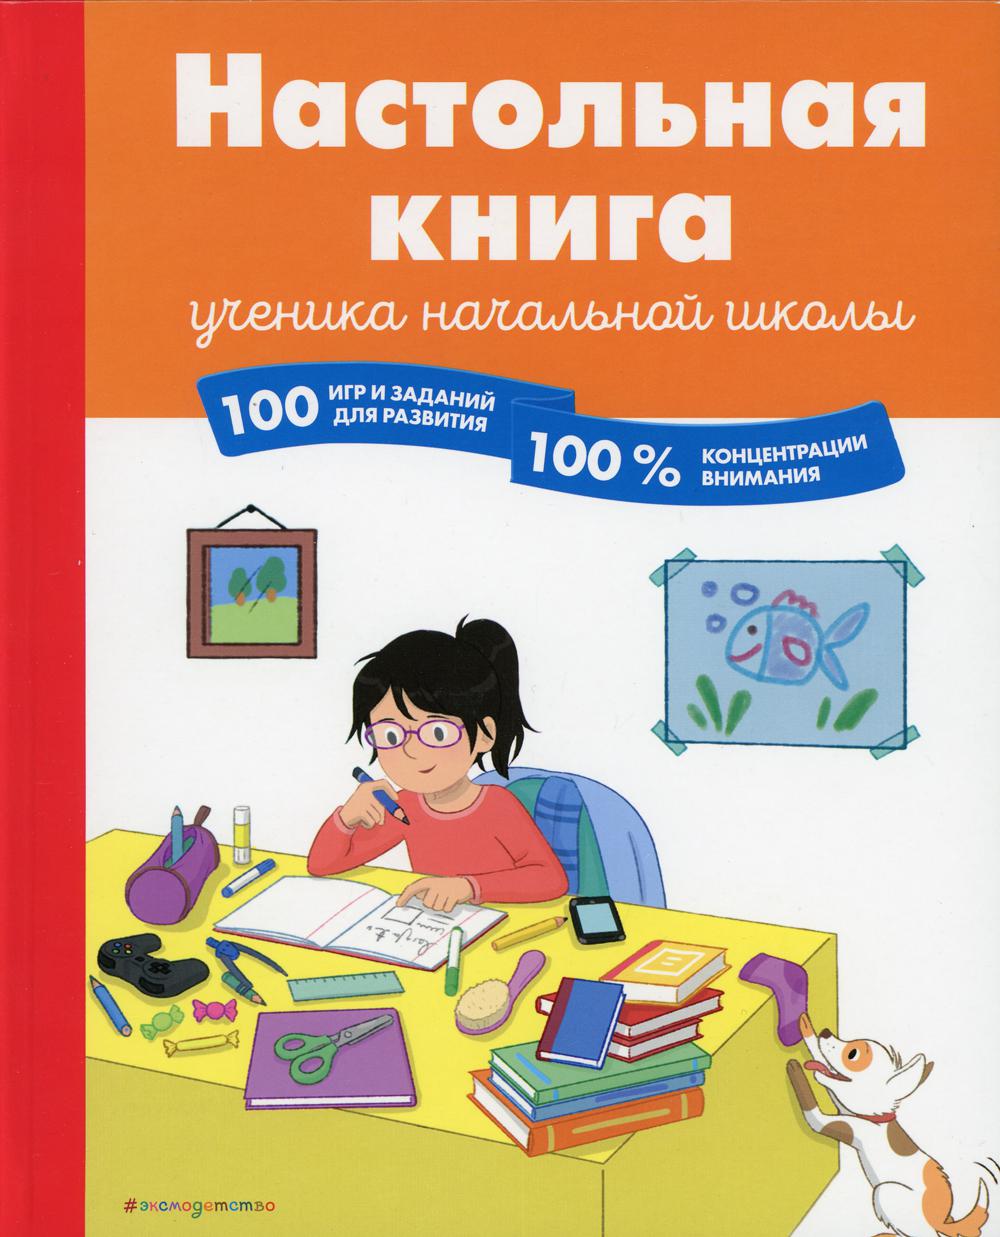 Настольная книга ученика начальной школы. 100 игр и заданий для развития 100 % концентрации внимания